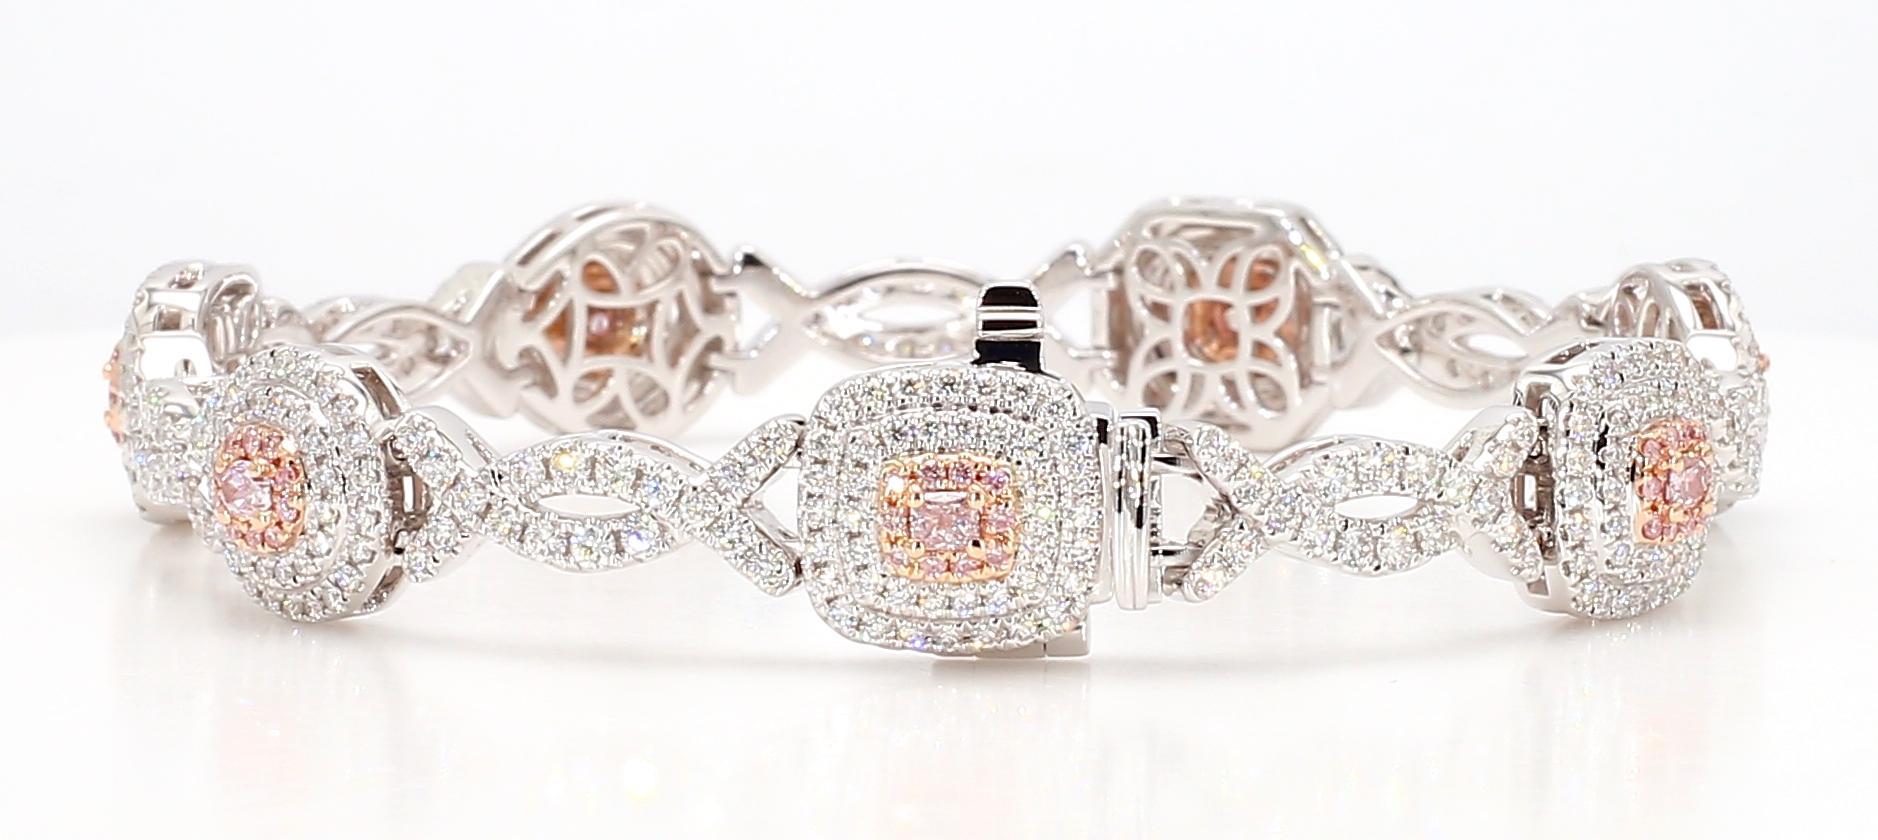 Das faszinierende Diamantarmband von RareGemWorld. Eingefasst in eine wunderschöne Fassung aus 18 Karat Rosé- und Weißgold mit 1 natürlichem rosa Diamanten im Ovalschliff, 3 natürlichen rosa Diamanten im Kissenschliff, 1 natürlichem rosa Diamanten